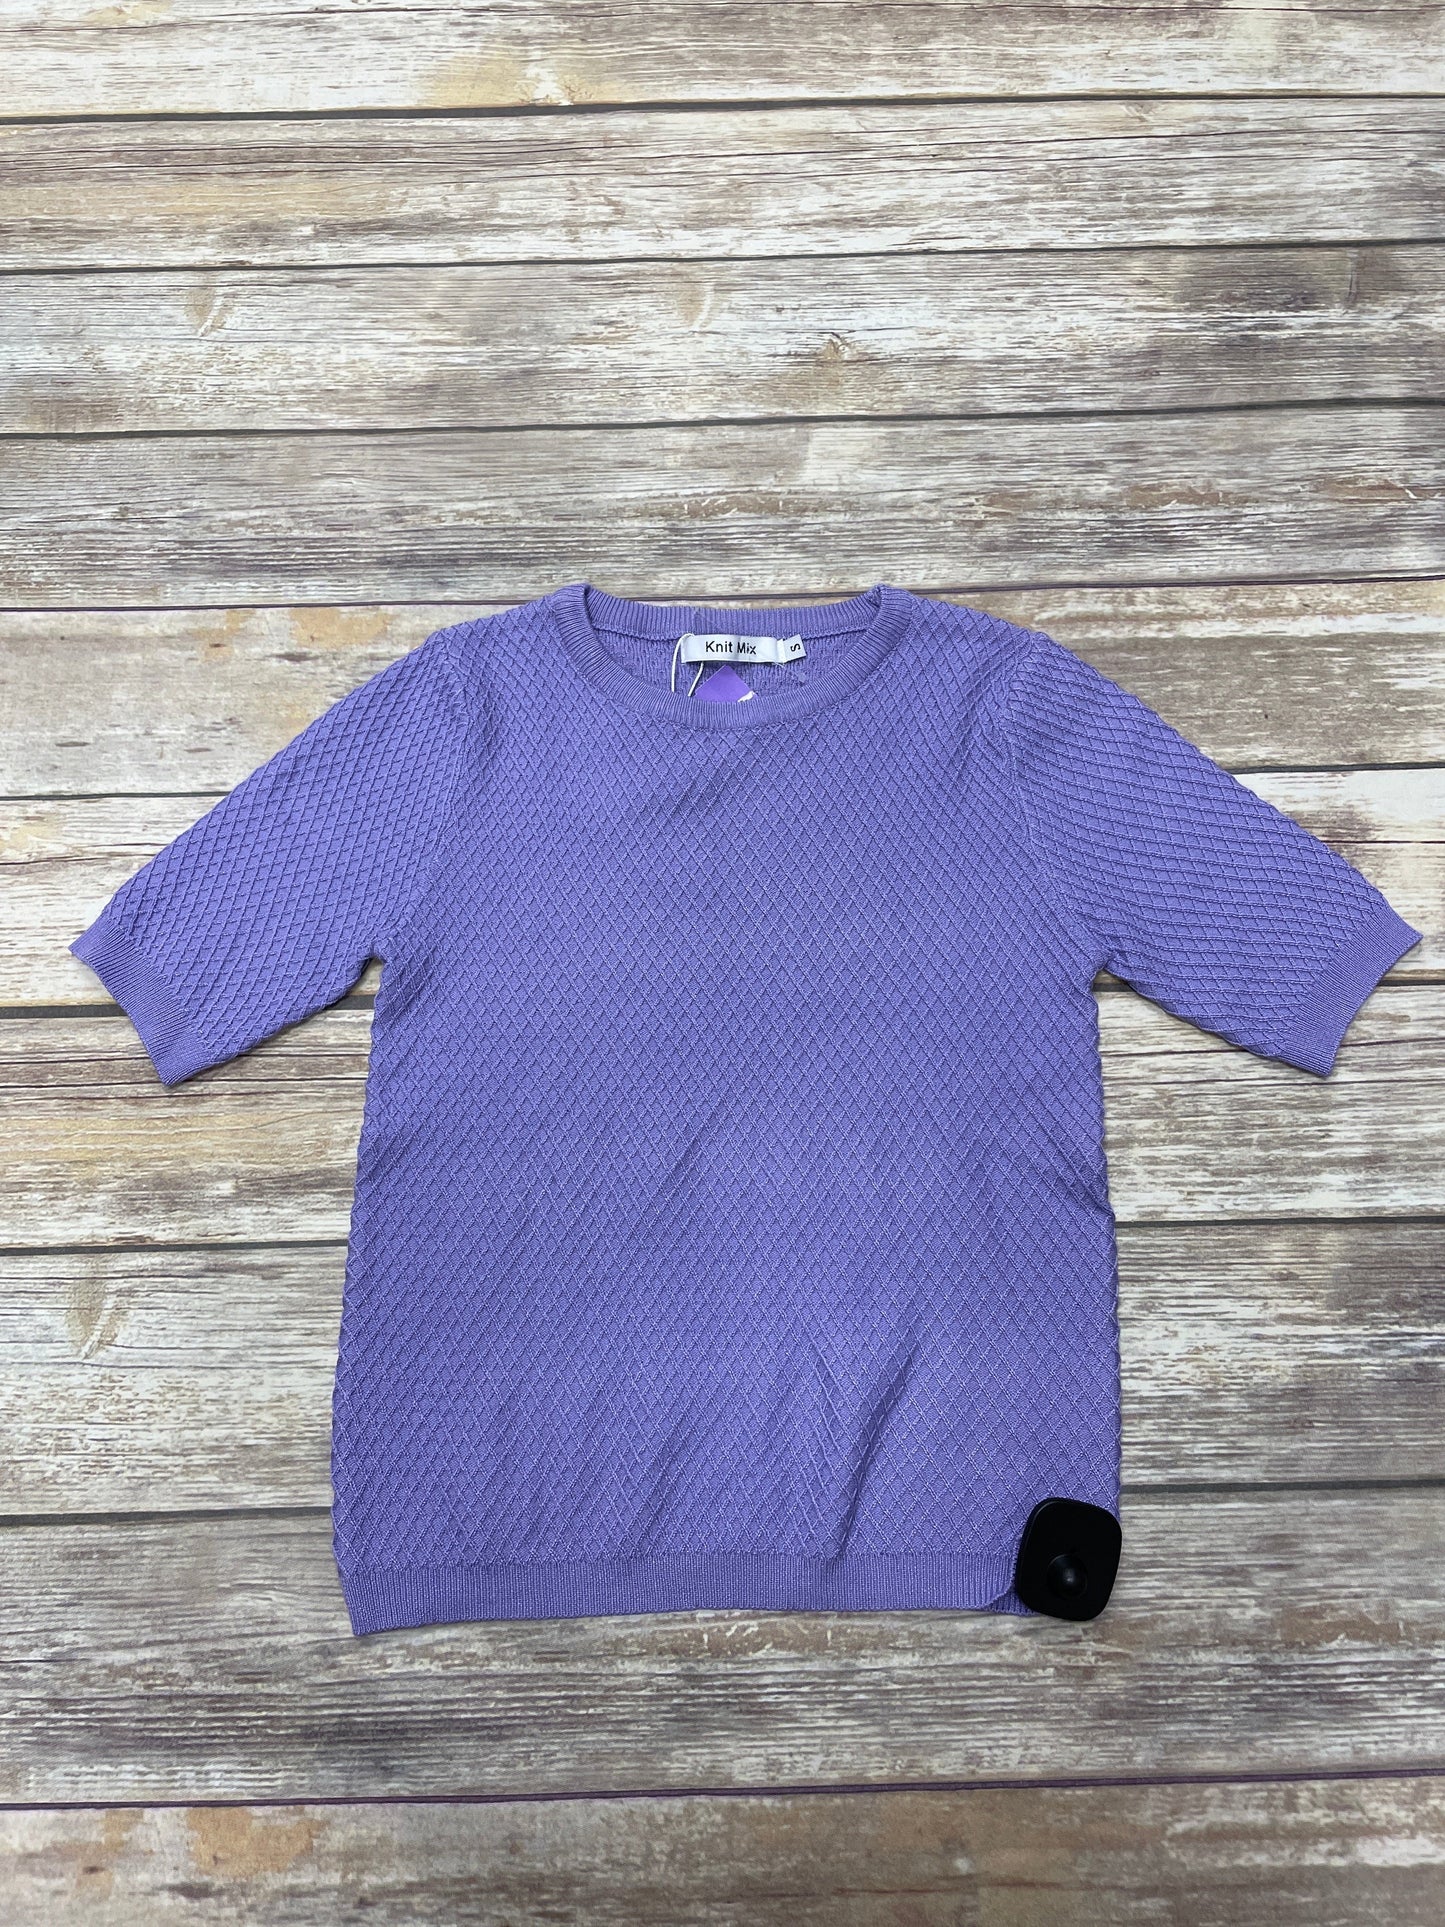 Purple Top Short Sleeve Knit Wear, Size S